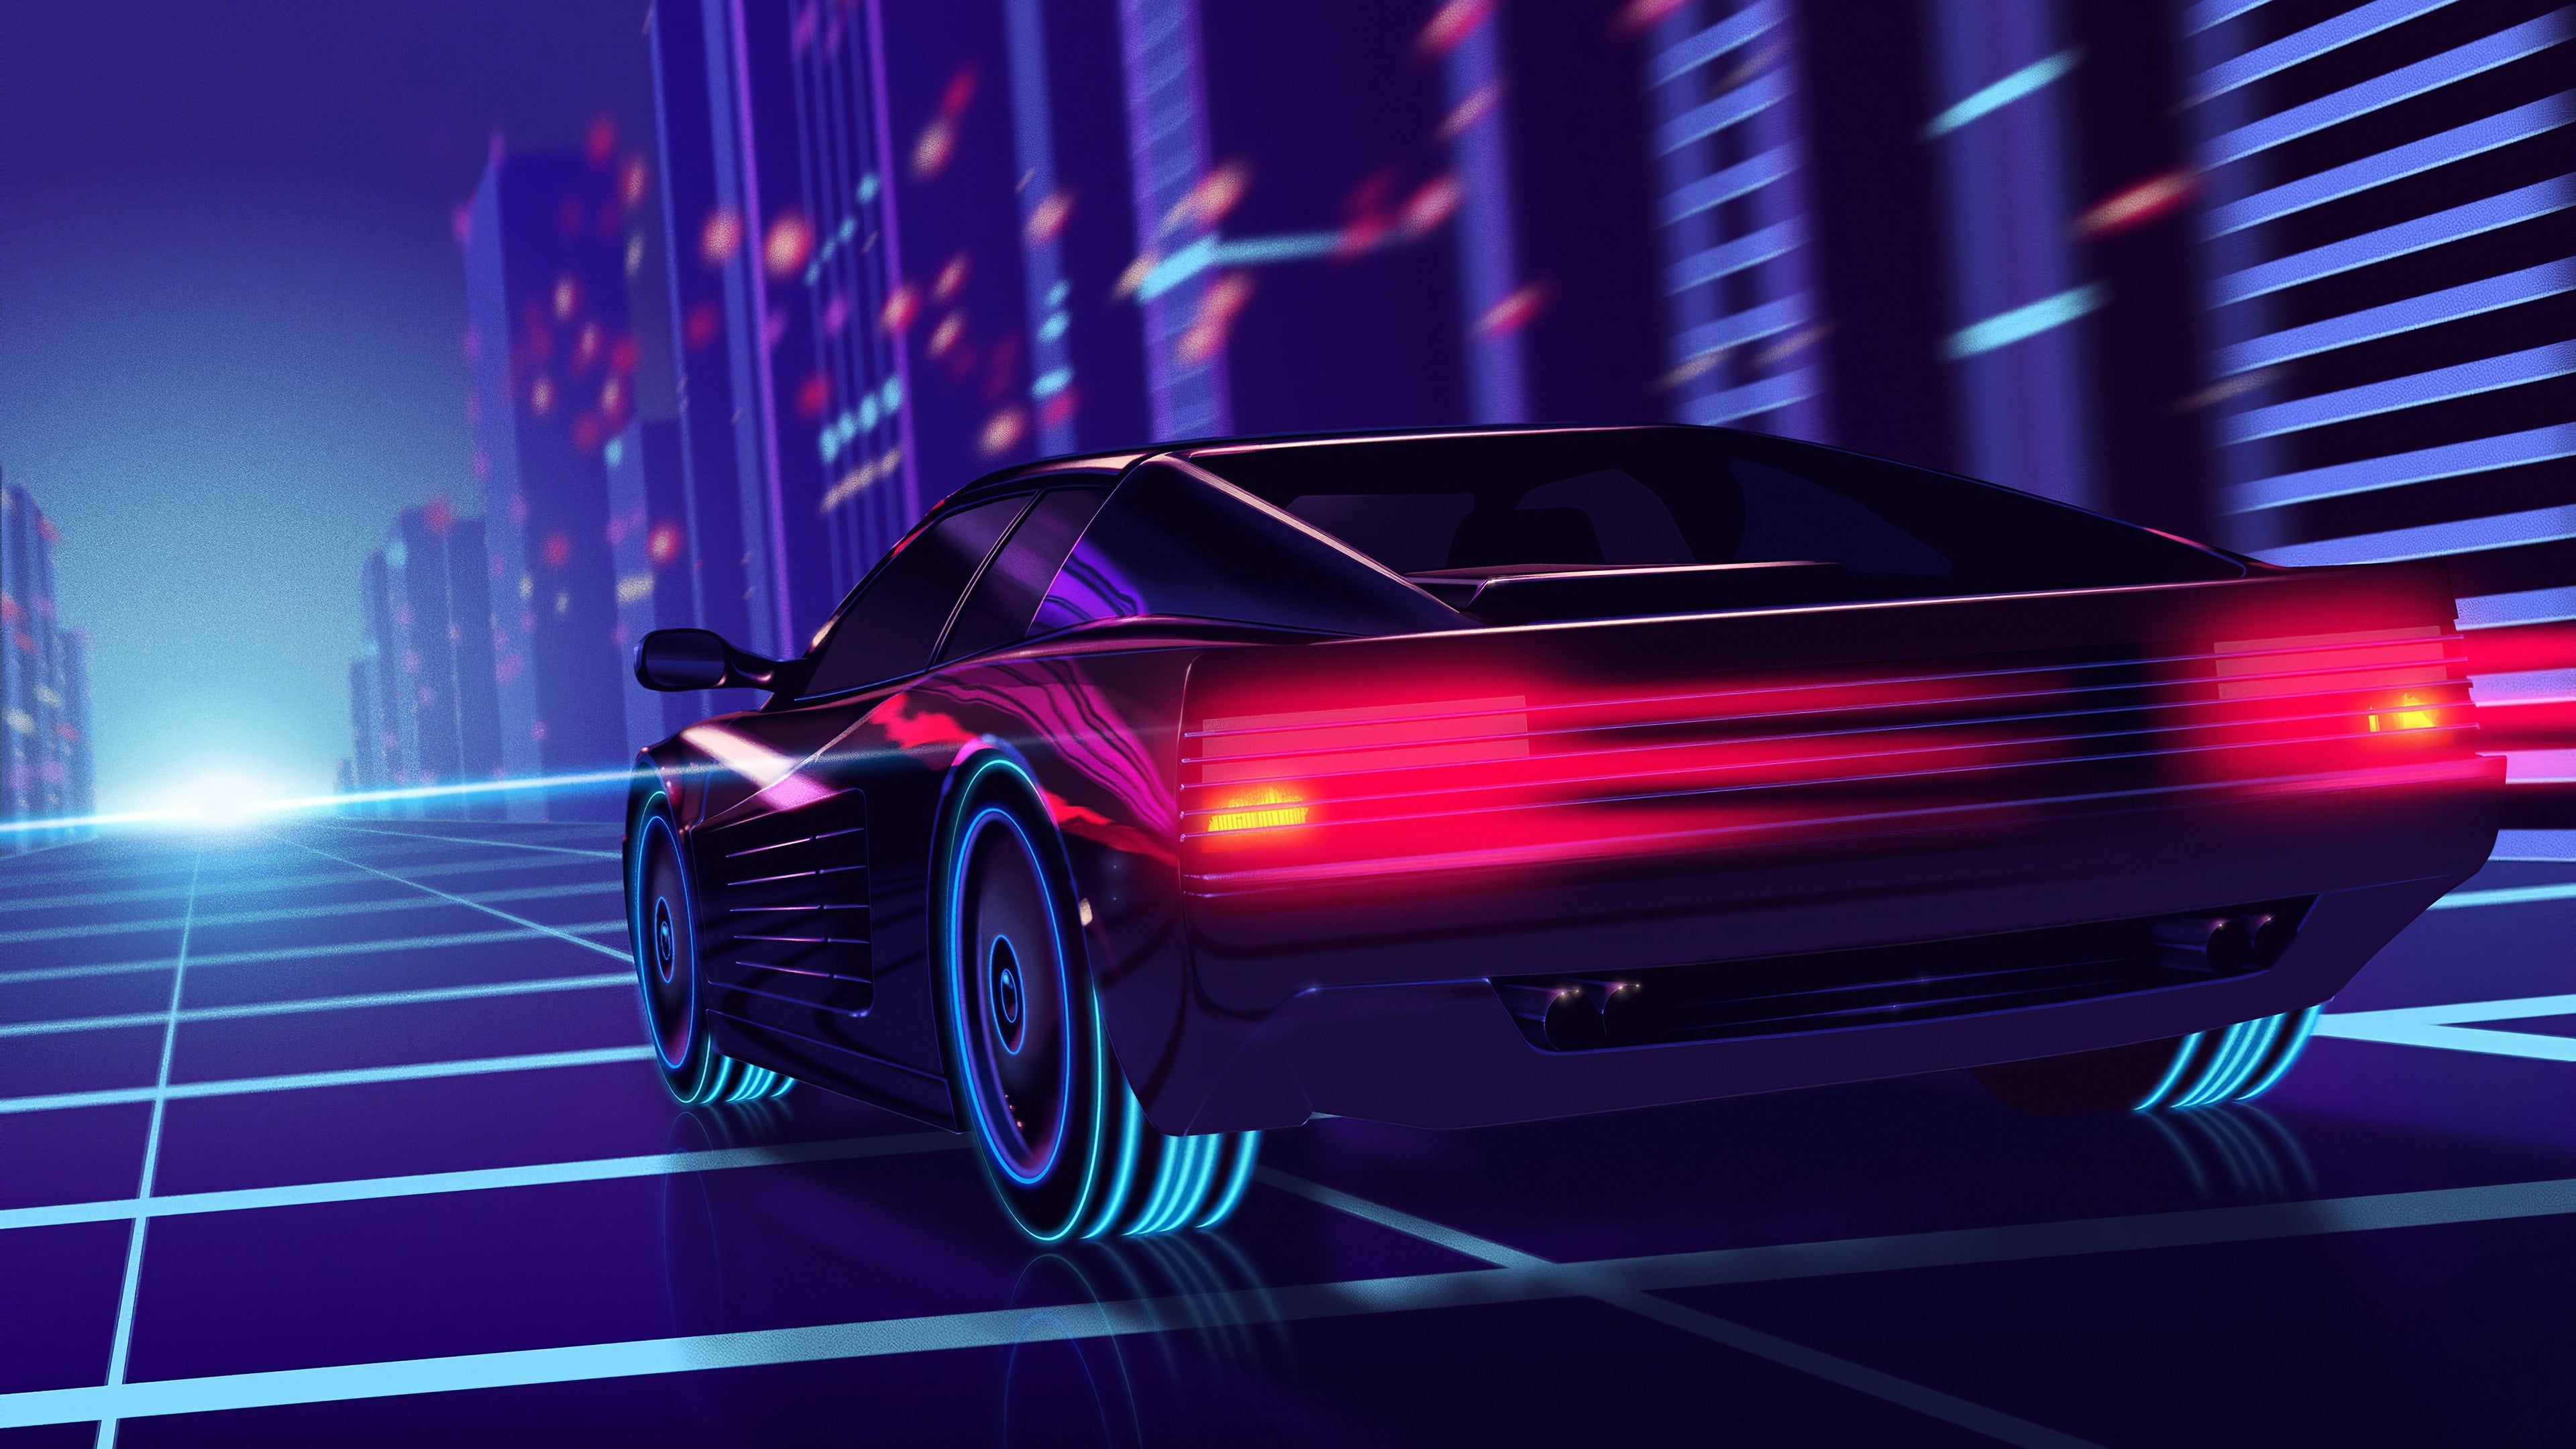 Lamborghini Car Neon Night Digital Art 4K Wallpaper #6.2522